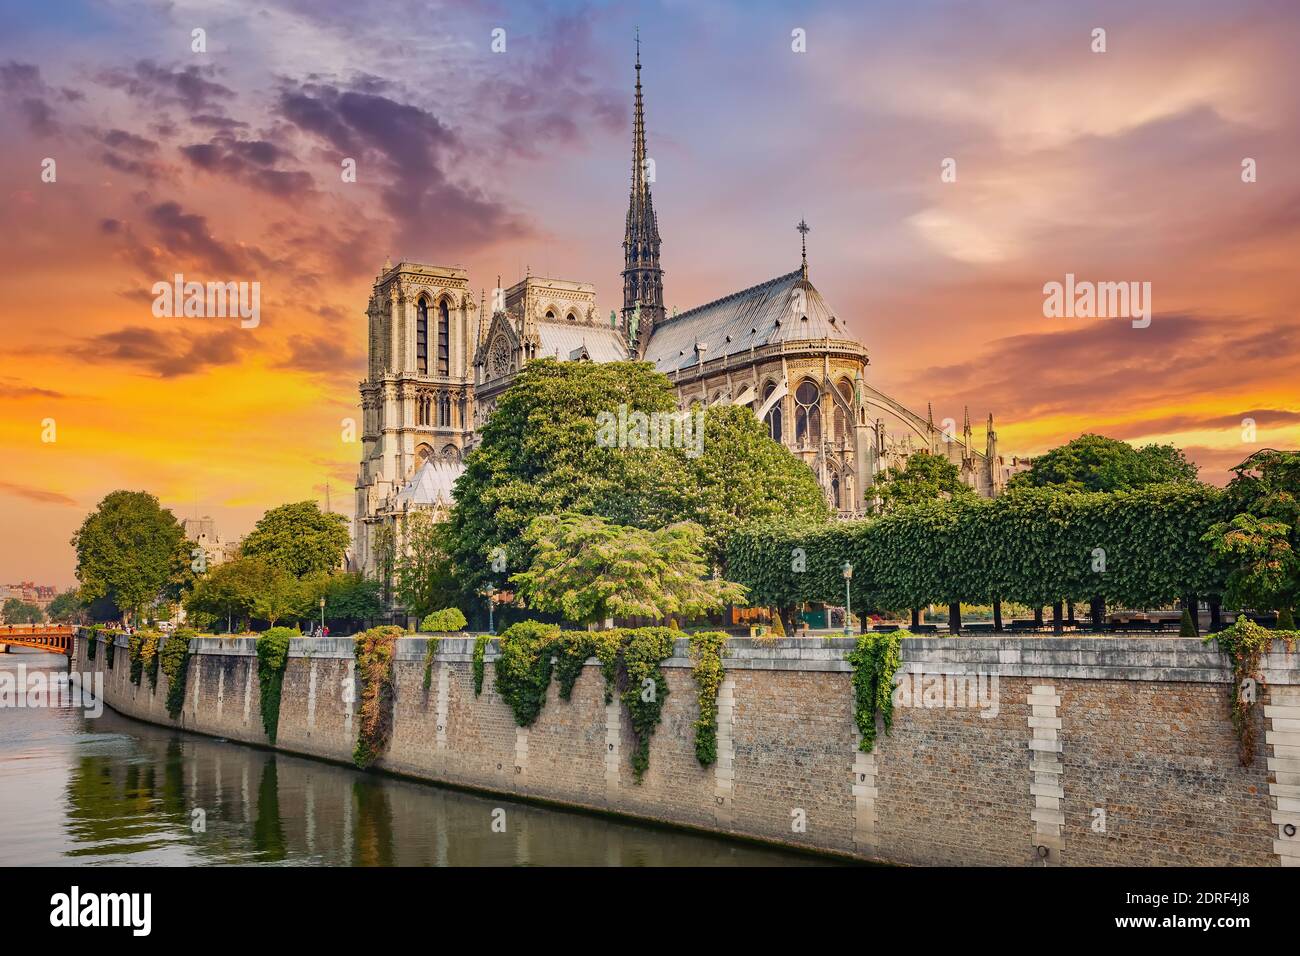 Notre Dame de Paris at spring, France Stock Photo Alamy